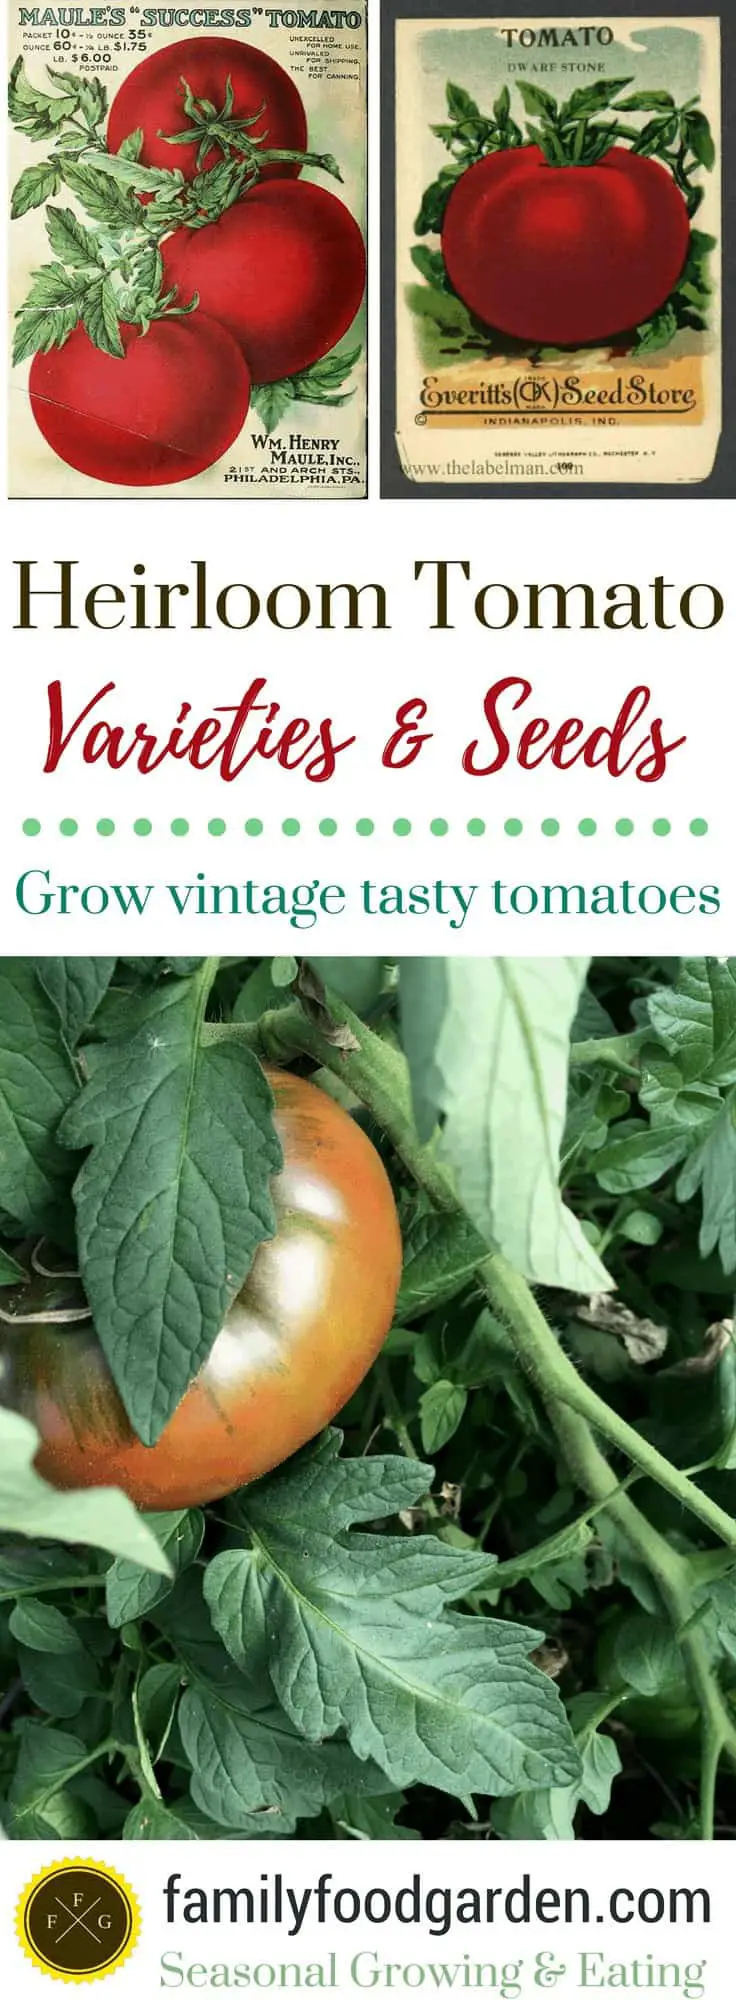 Heirloom Tomato Seeds & Varieties